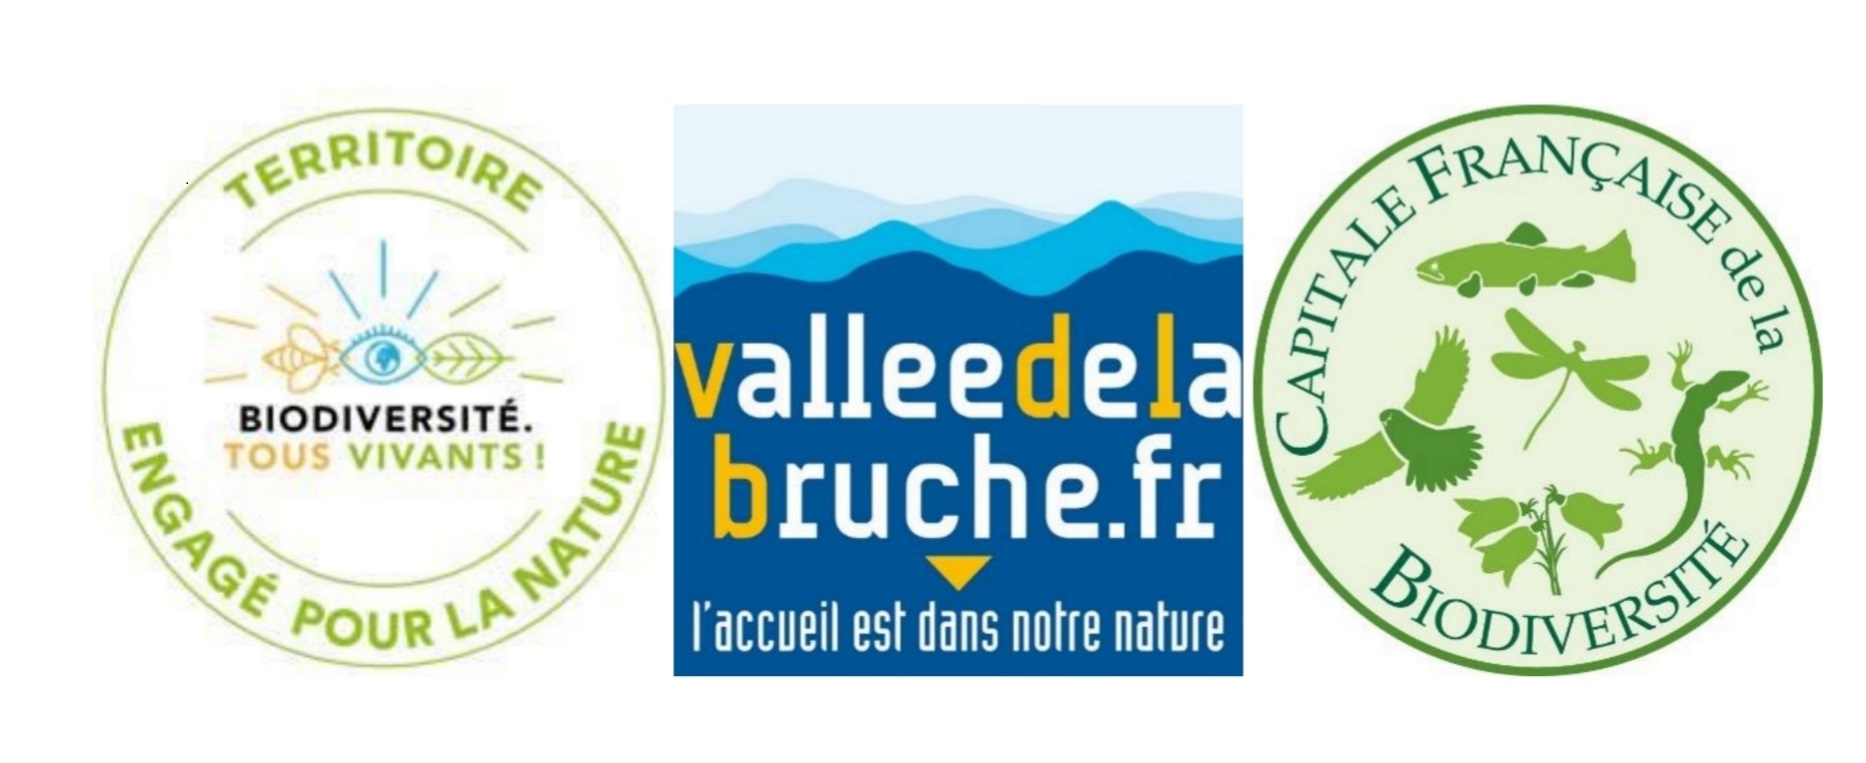  La Vallée de la Bruche élue « Capitale française de la Biodiversité 2022 - Paysage & Biodiversité » 